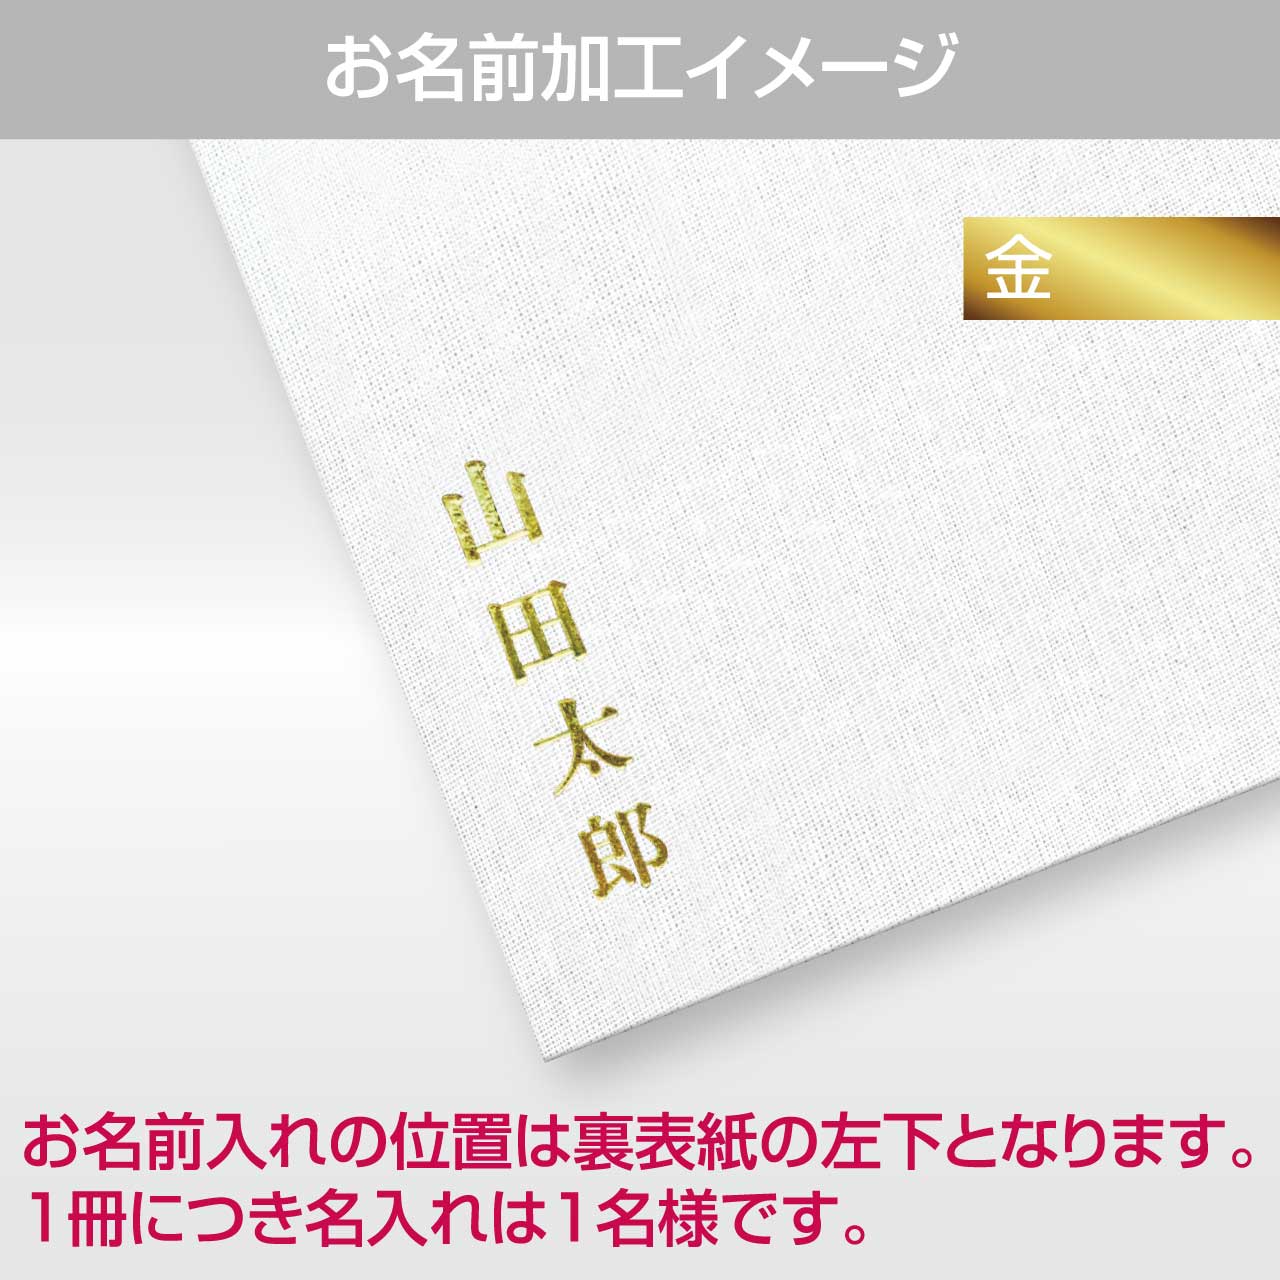 Goshuin book “Yamato Nadeshiko” Aiiro Komachi